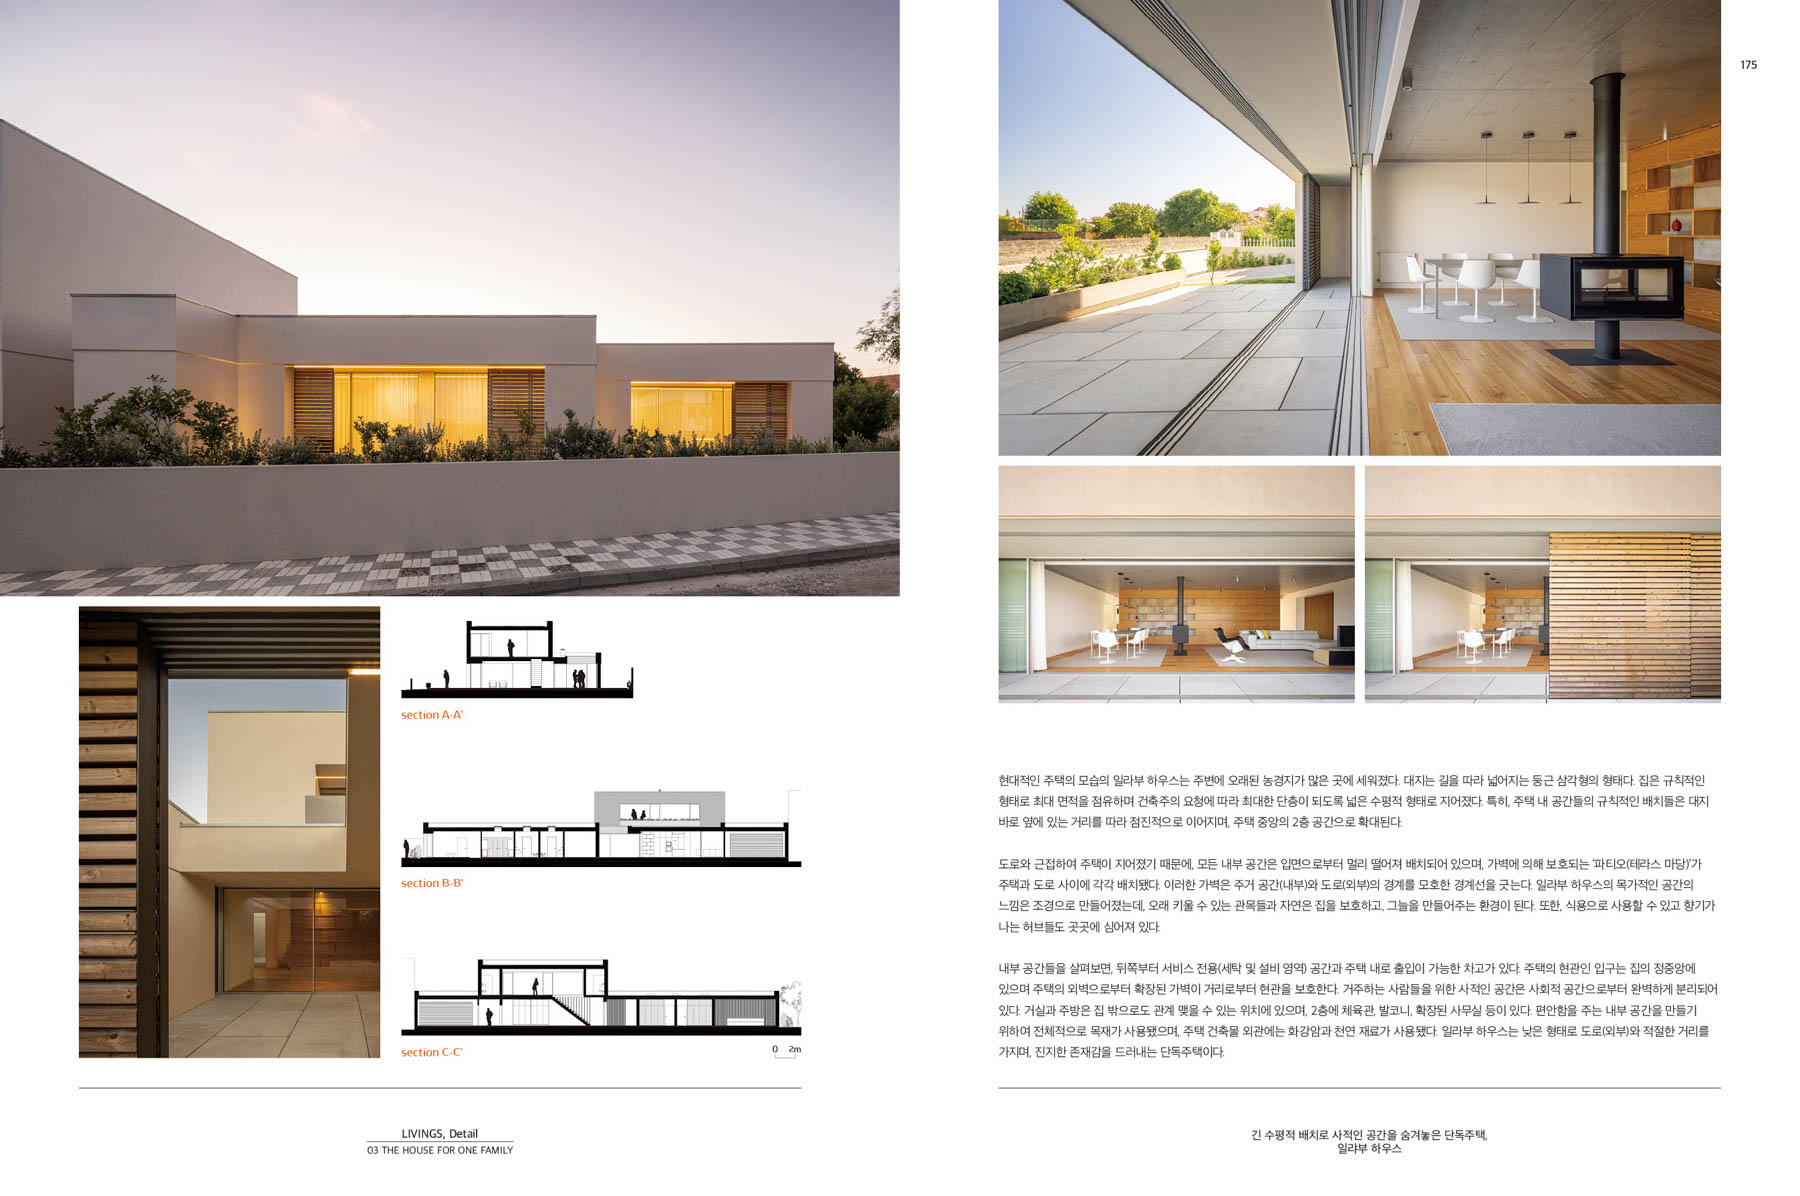 Livings Detail do atelier M2Senos Arquitectos com fotografia arquitetura de ivo tavares studio - architectural photography